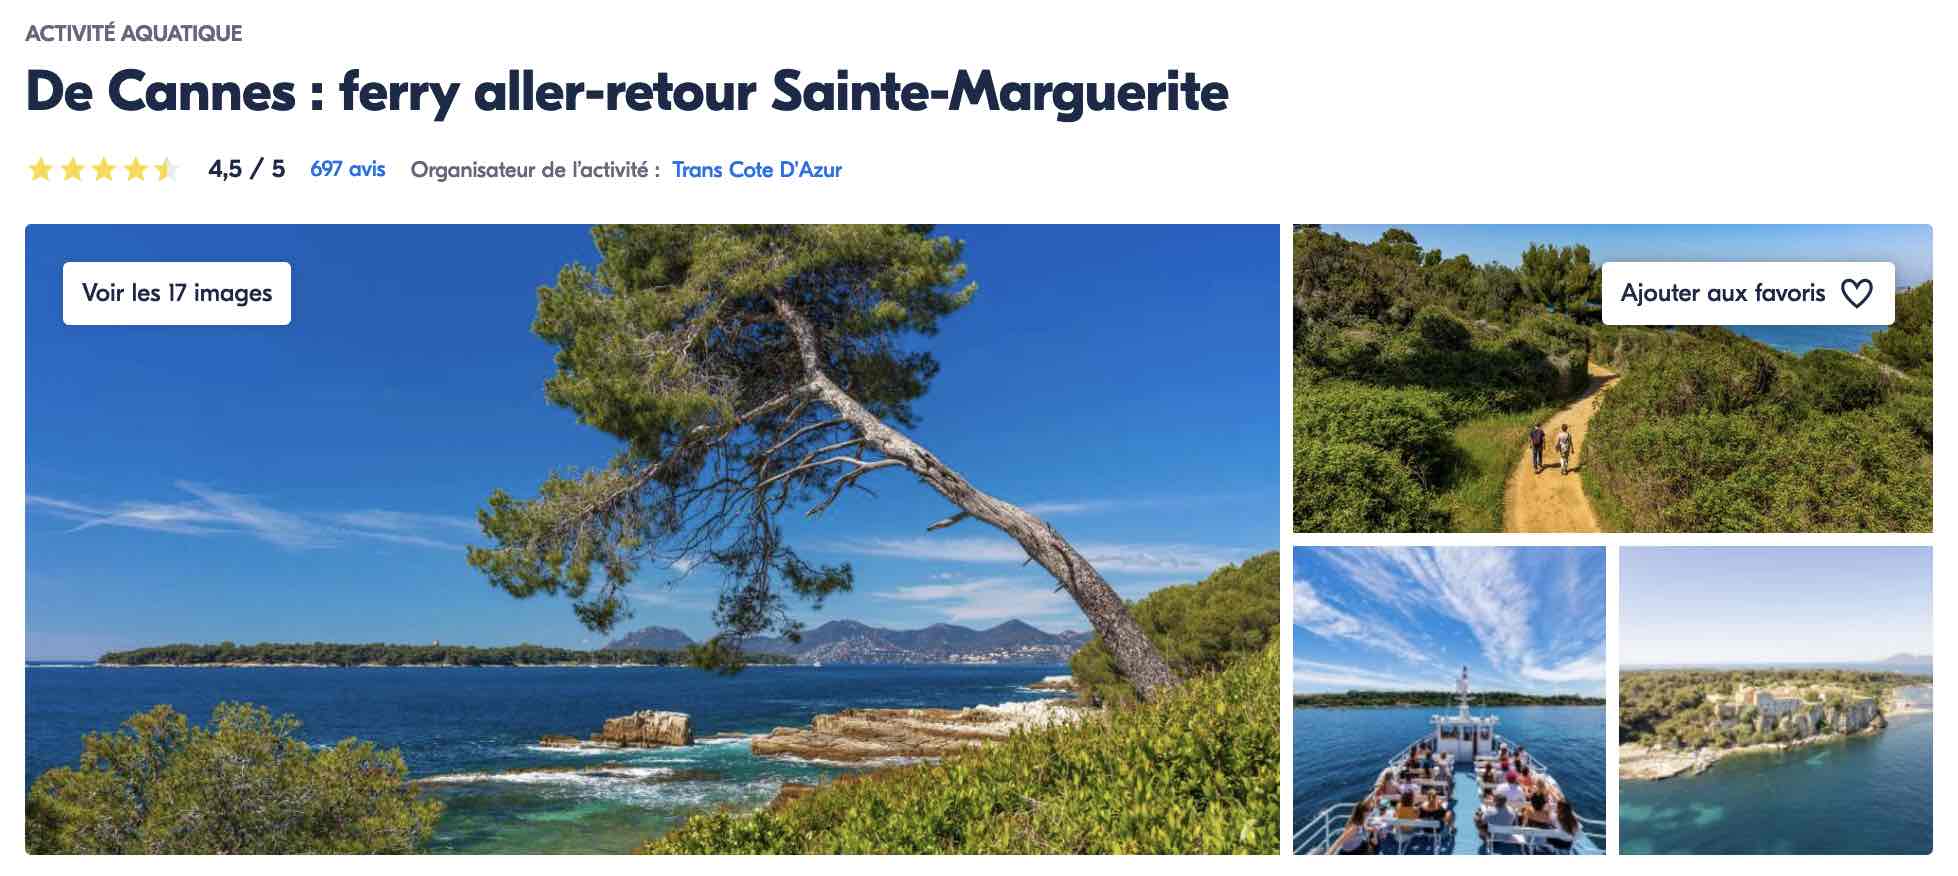 visiter-ile-sainte-marguerite-proche-antibes-billet-ferry